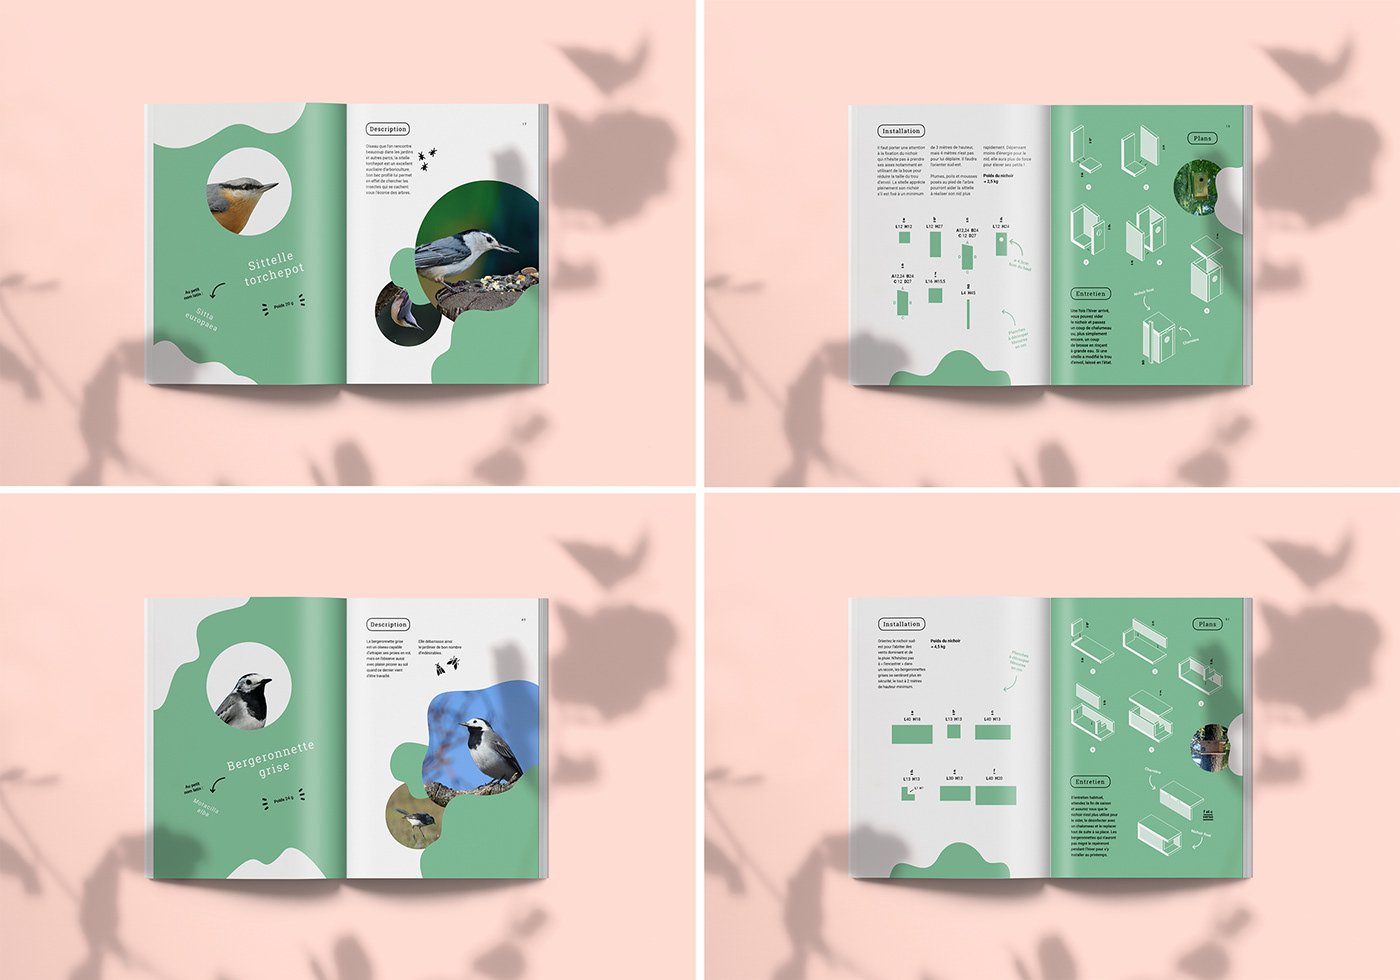 edition graphisme graphicdesign paper birds oiseaux livre book colors ILLUSTRATION 